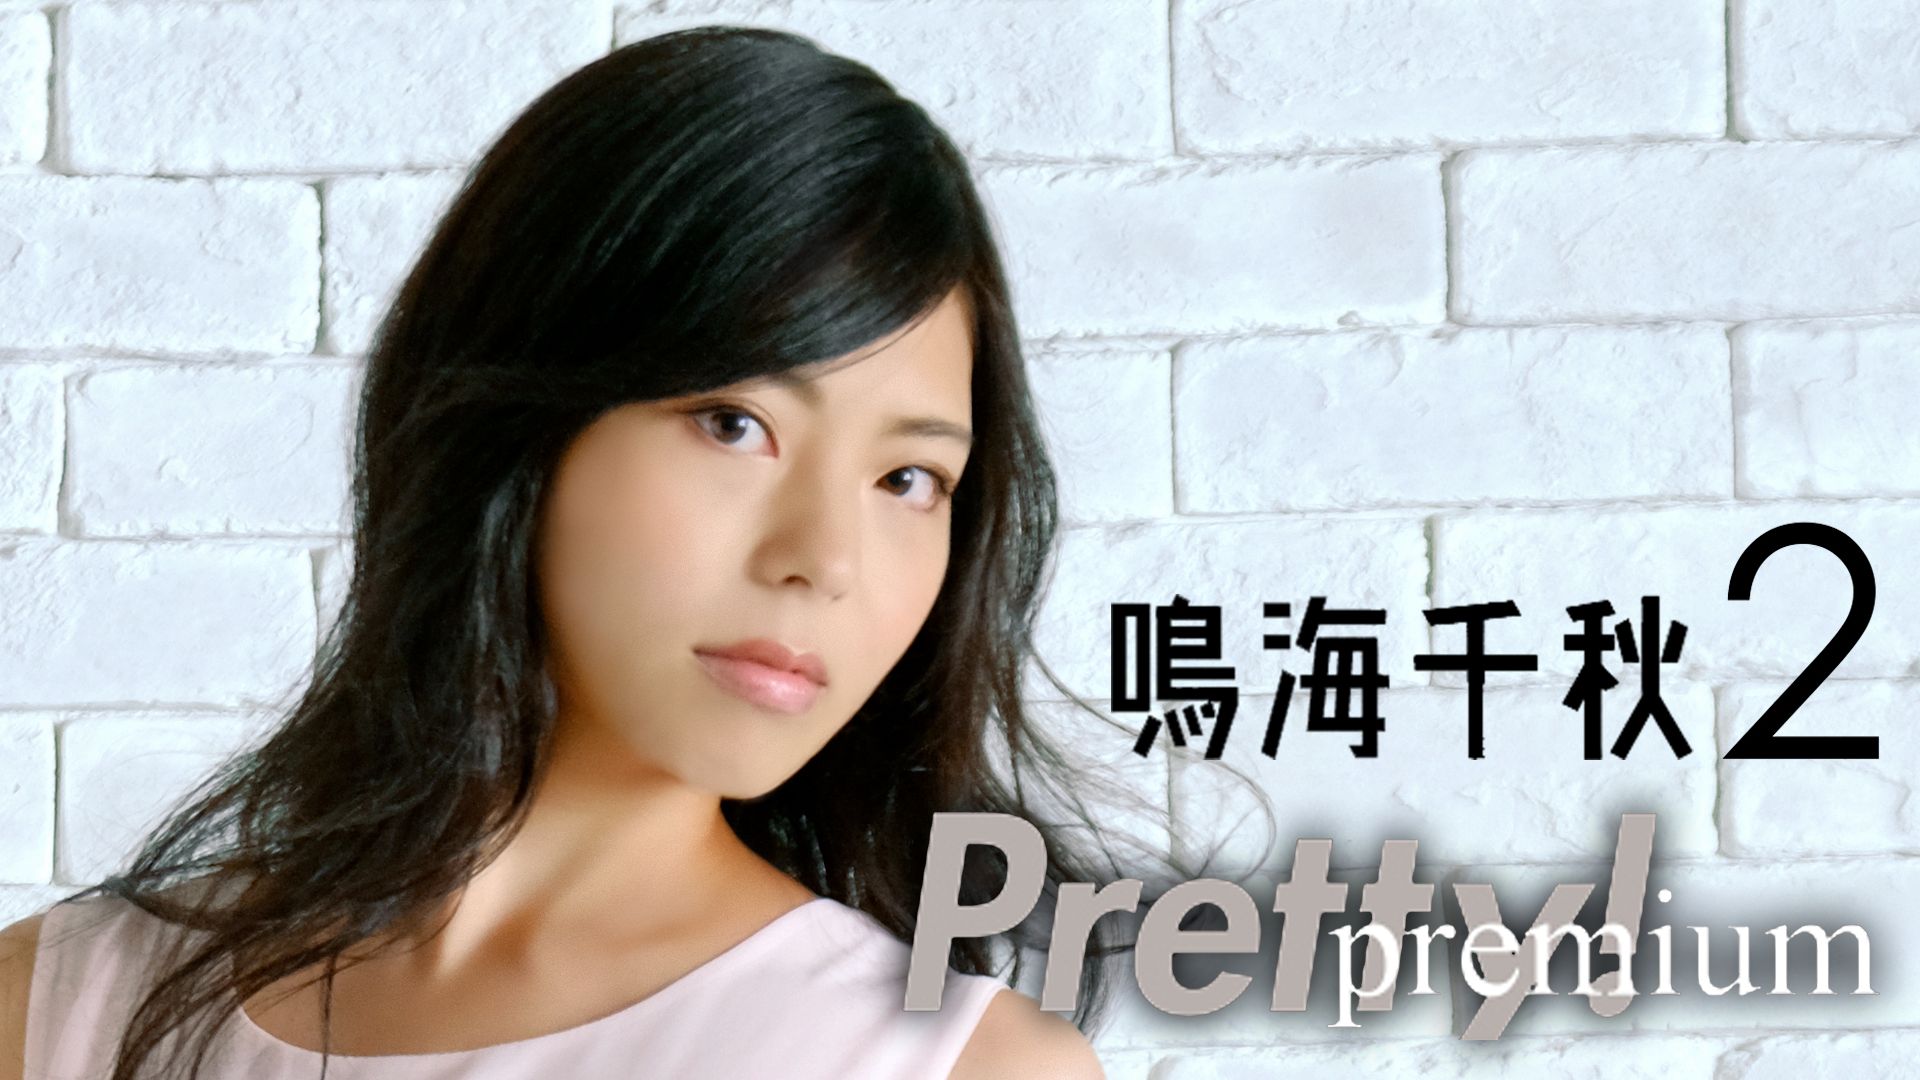 鳴海千秋 / Pretty！Premium  鳴海千秋2